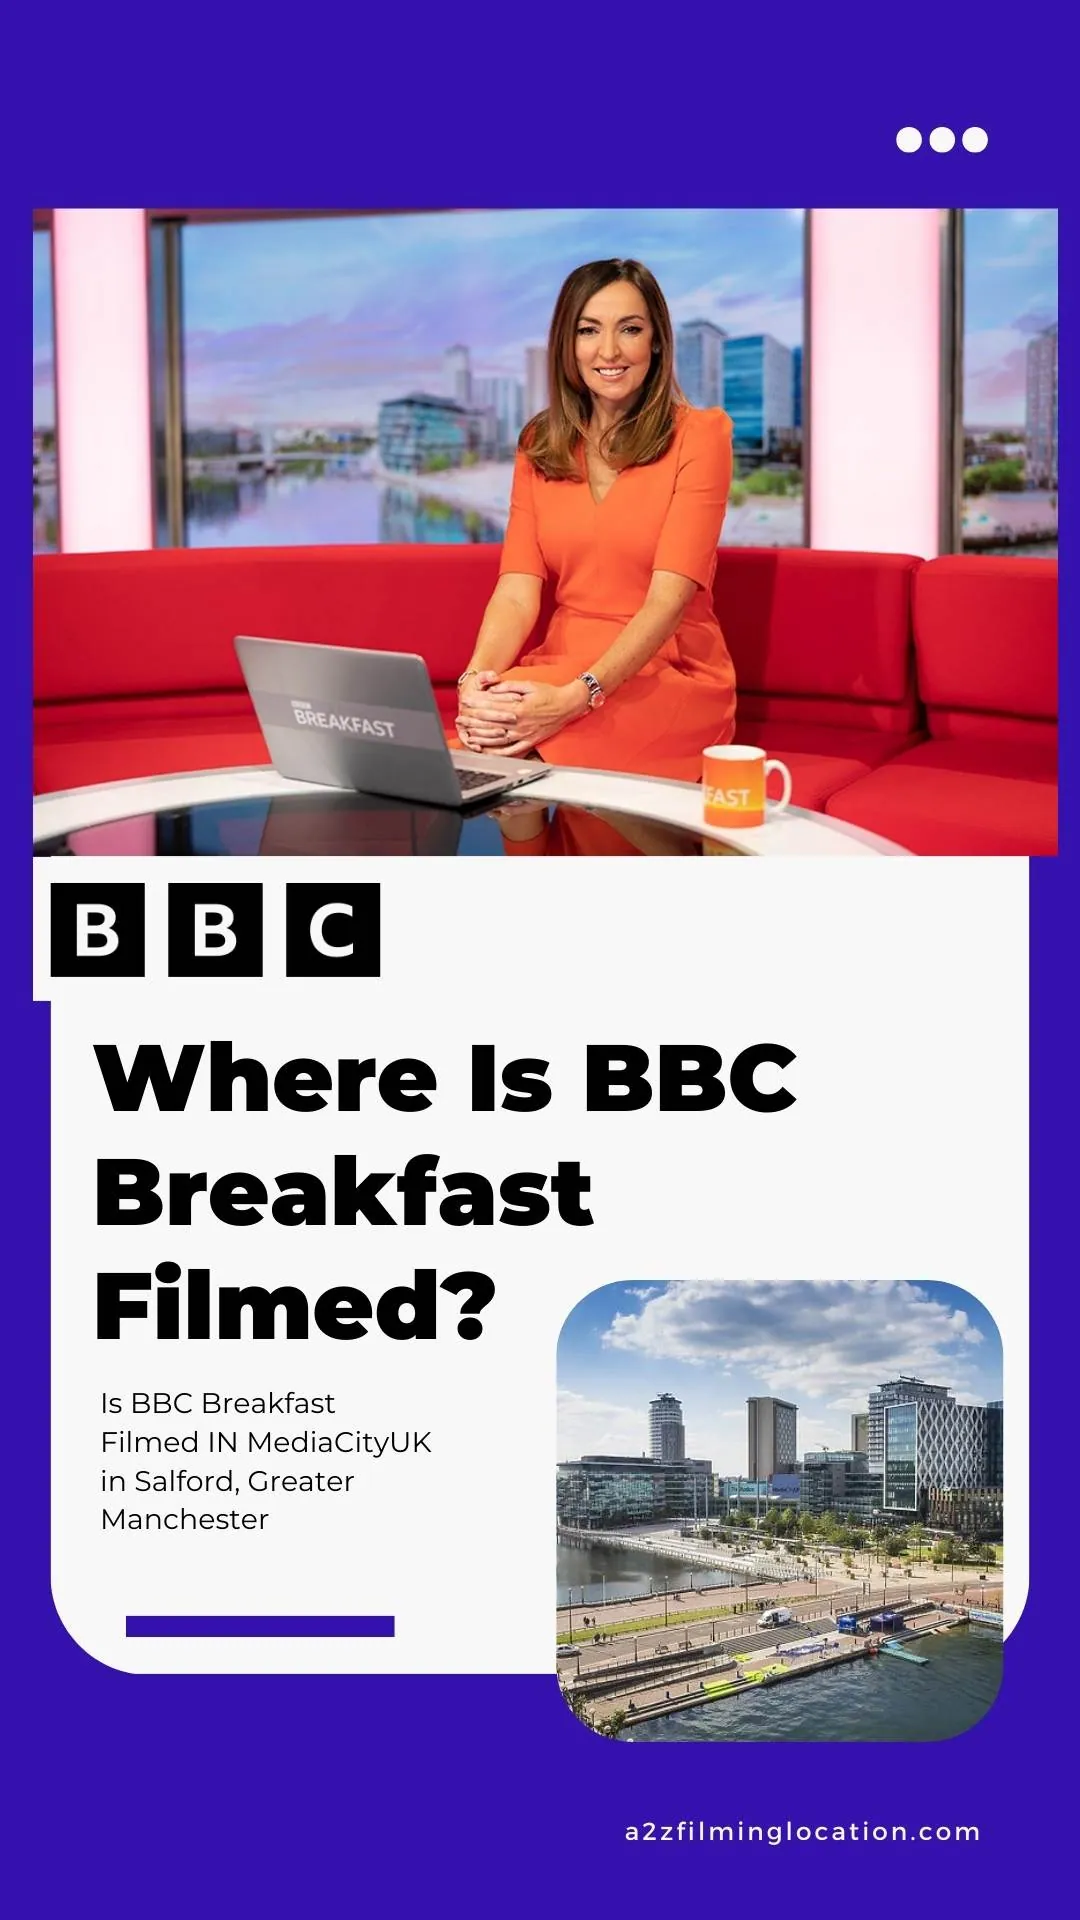 Where Is BBC Breakfast Filmed